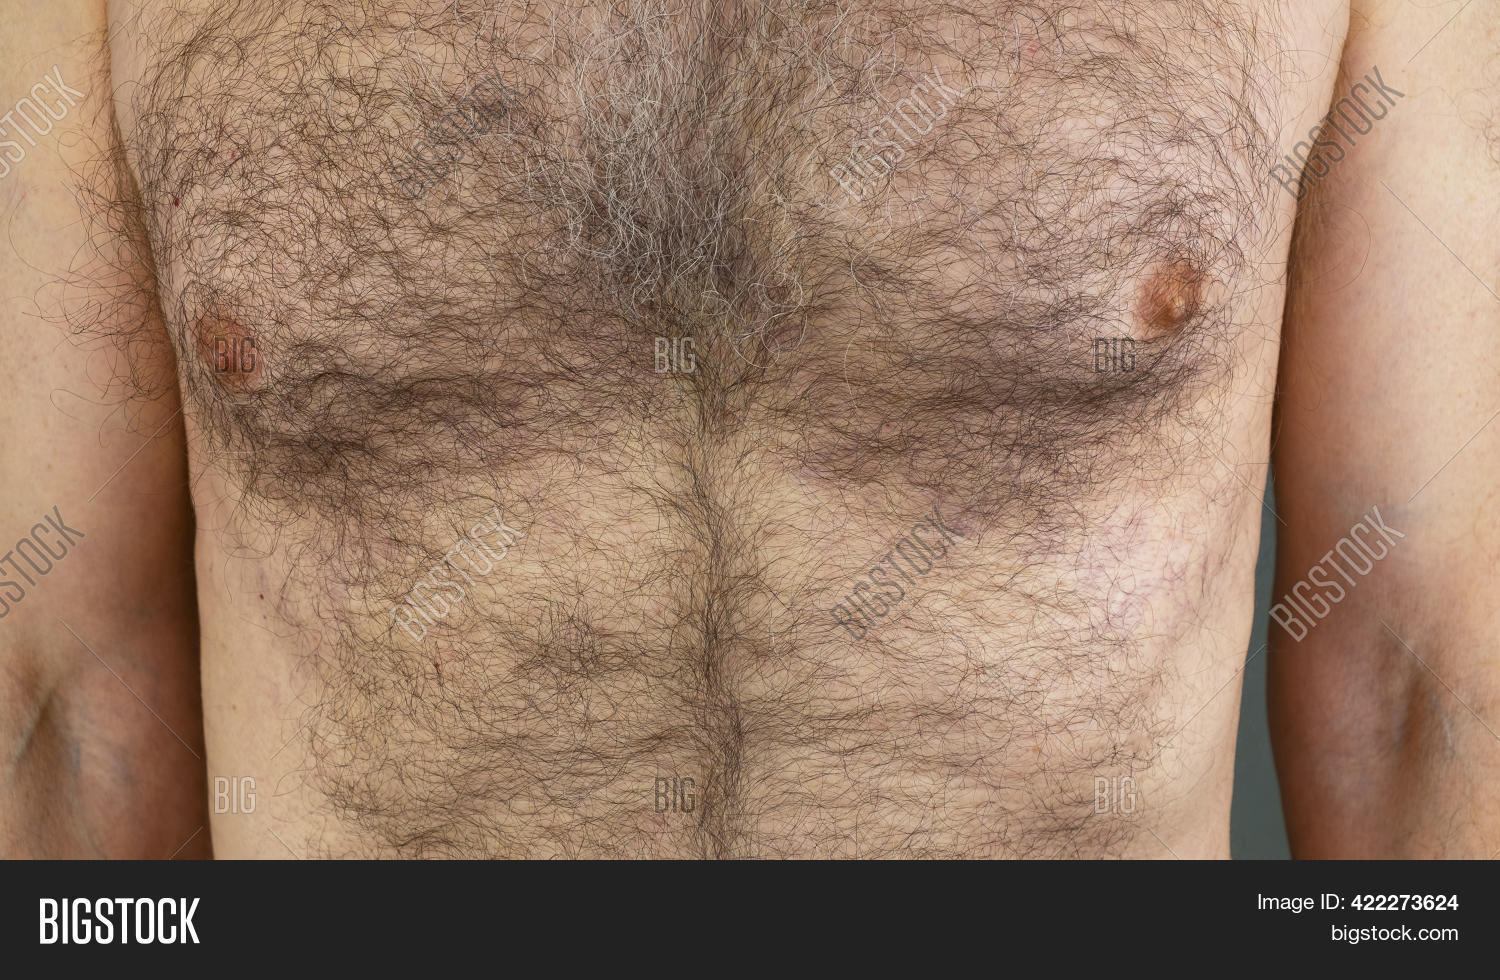 brittney pollard recommends Big Hairy Man Boobs